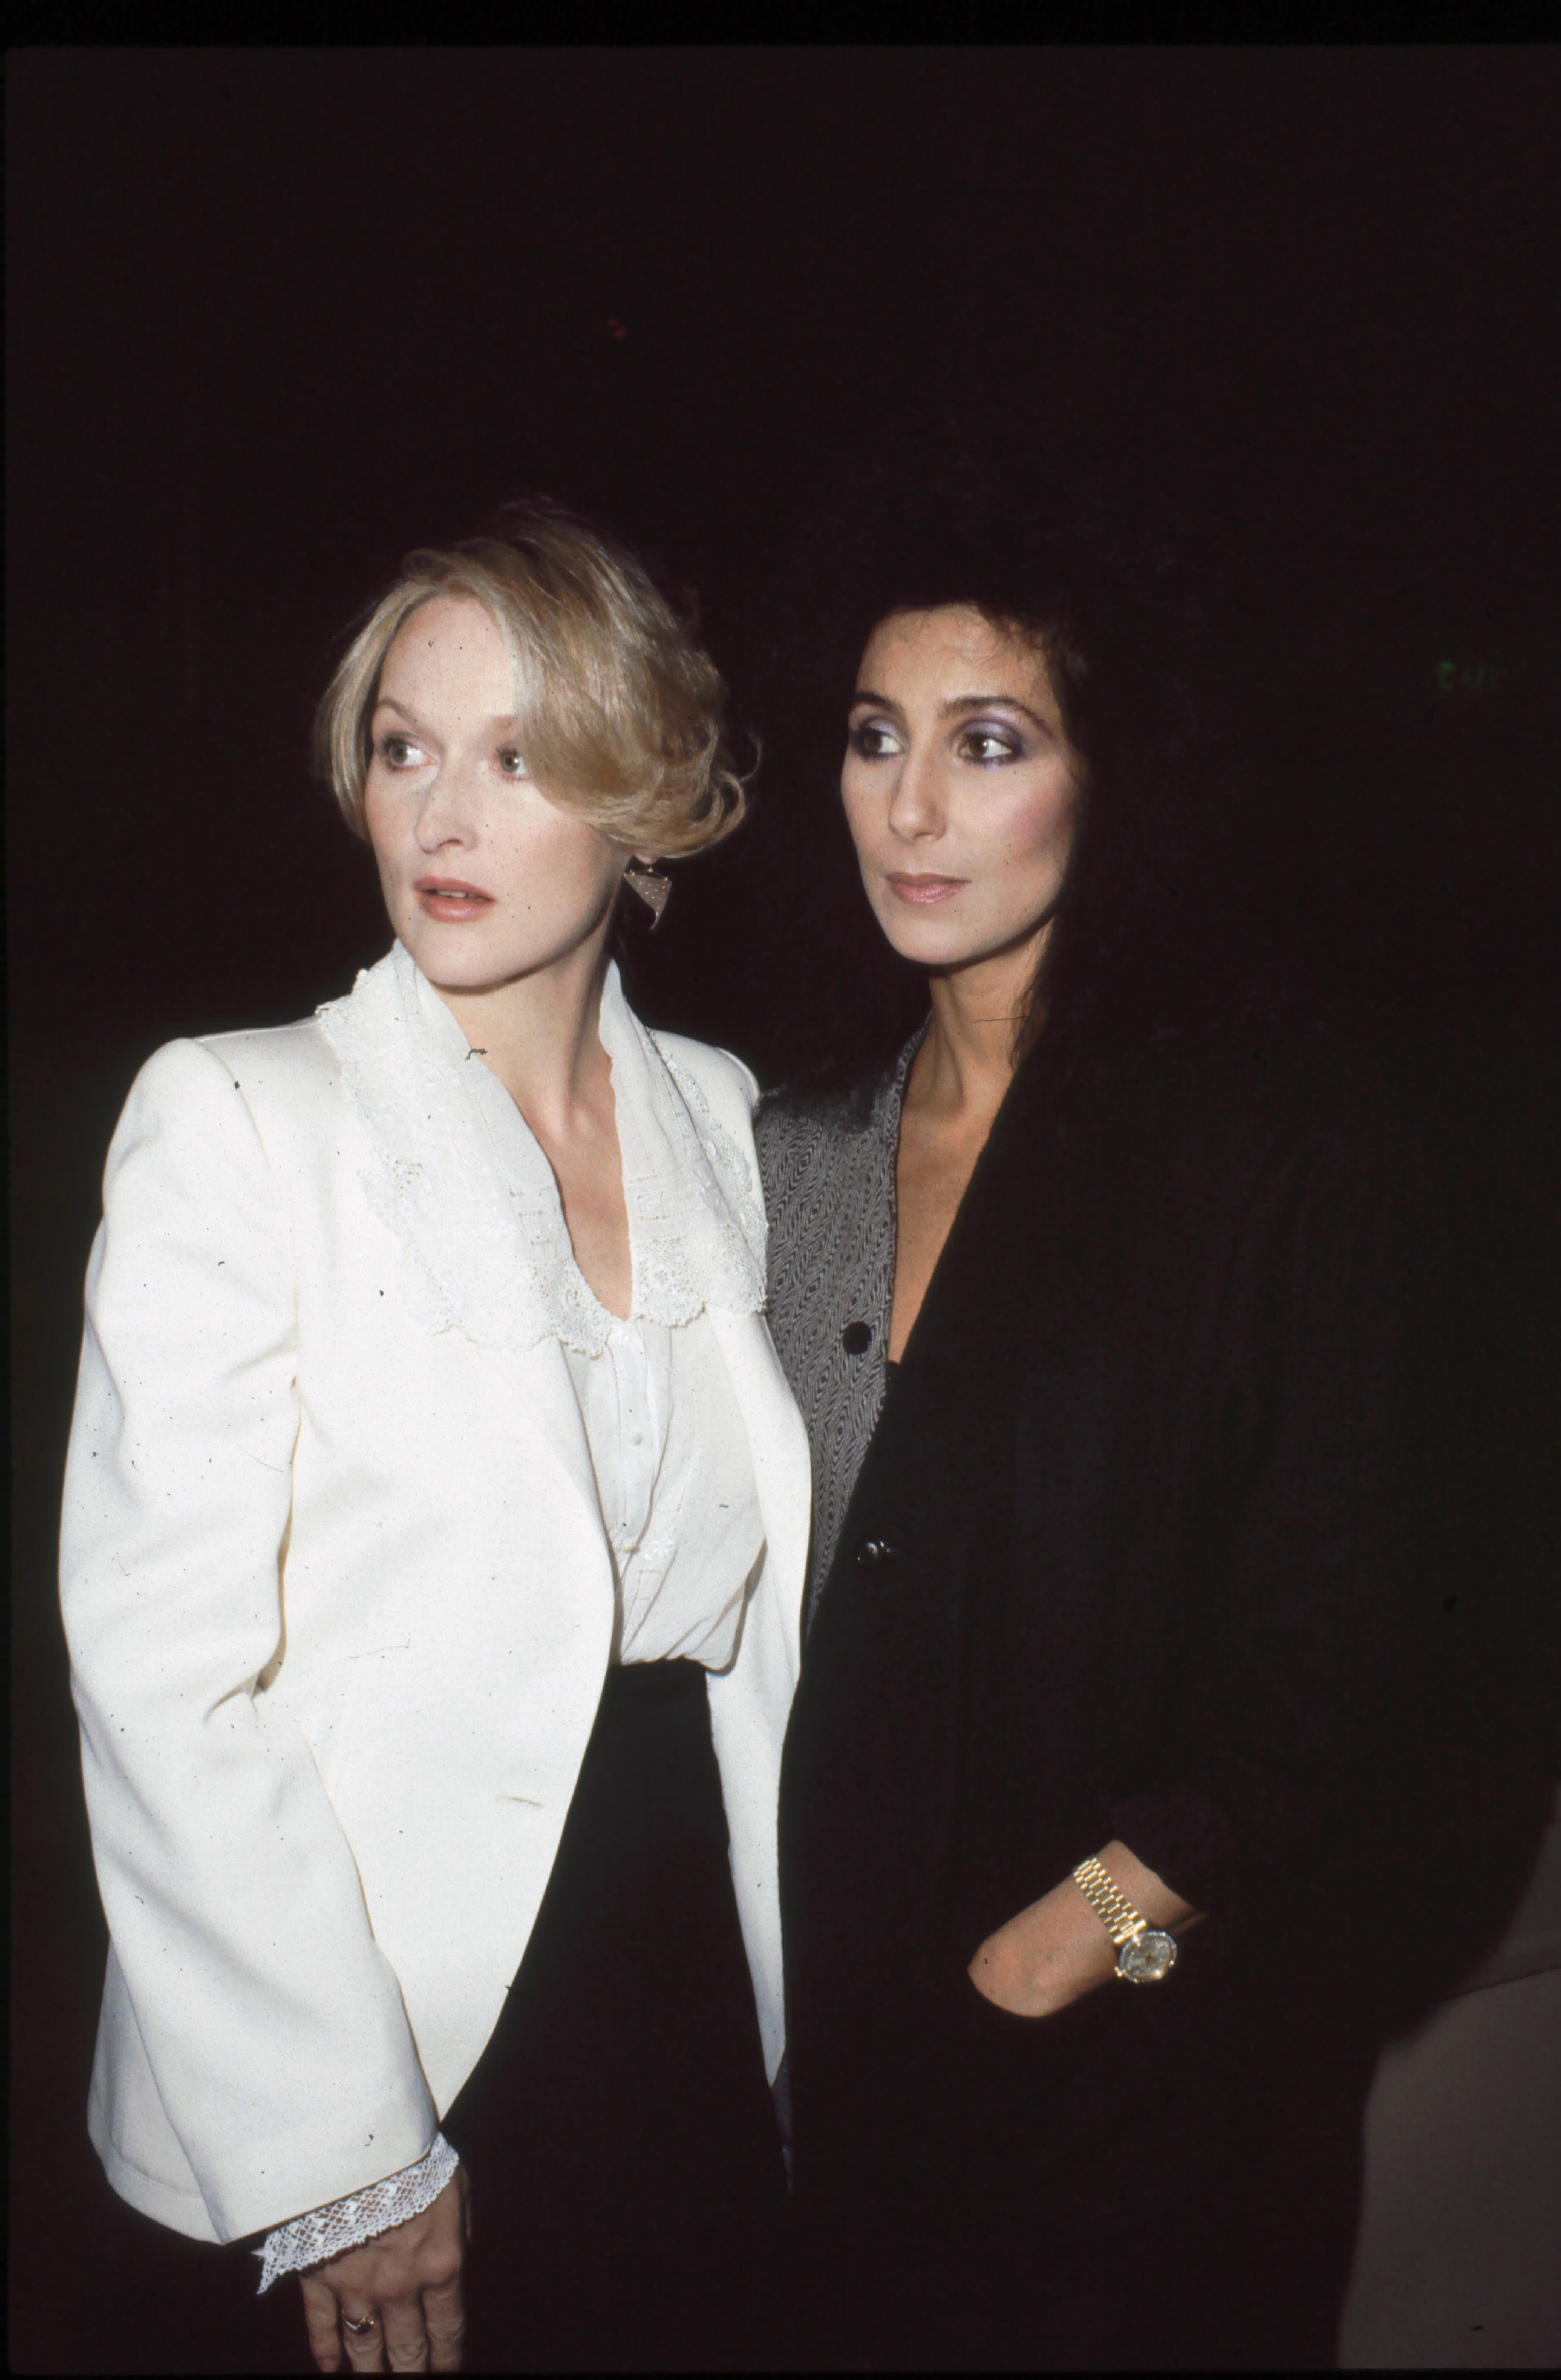 Ihre Outfits ähnelten auffallend denen, die sie 1983 gemeinsam zur Premiere ihres Films „Silkwood“ trugen